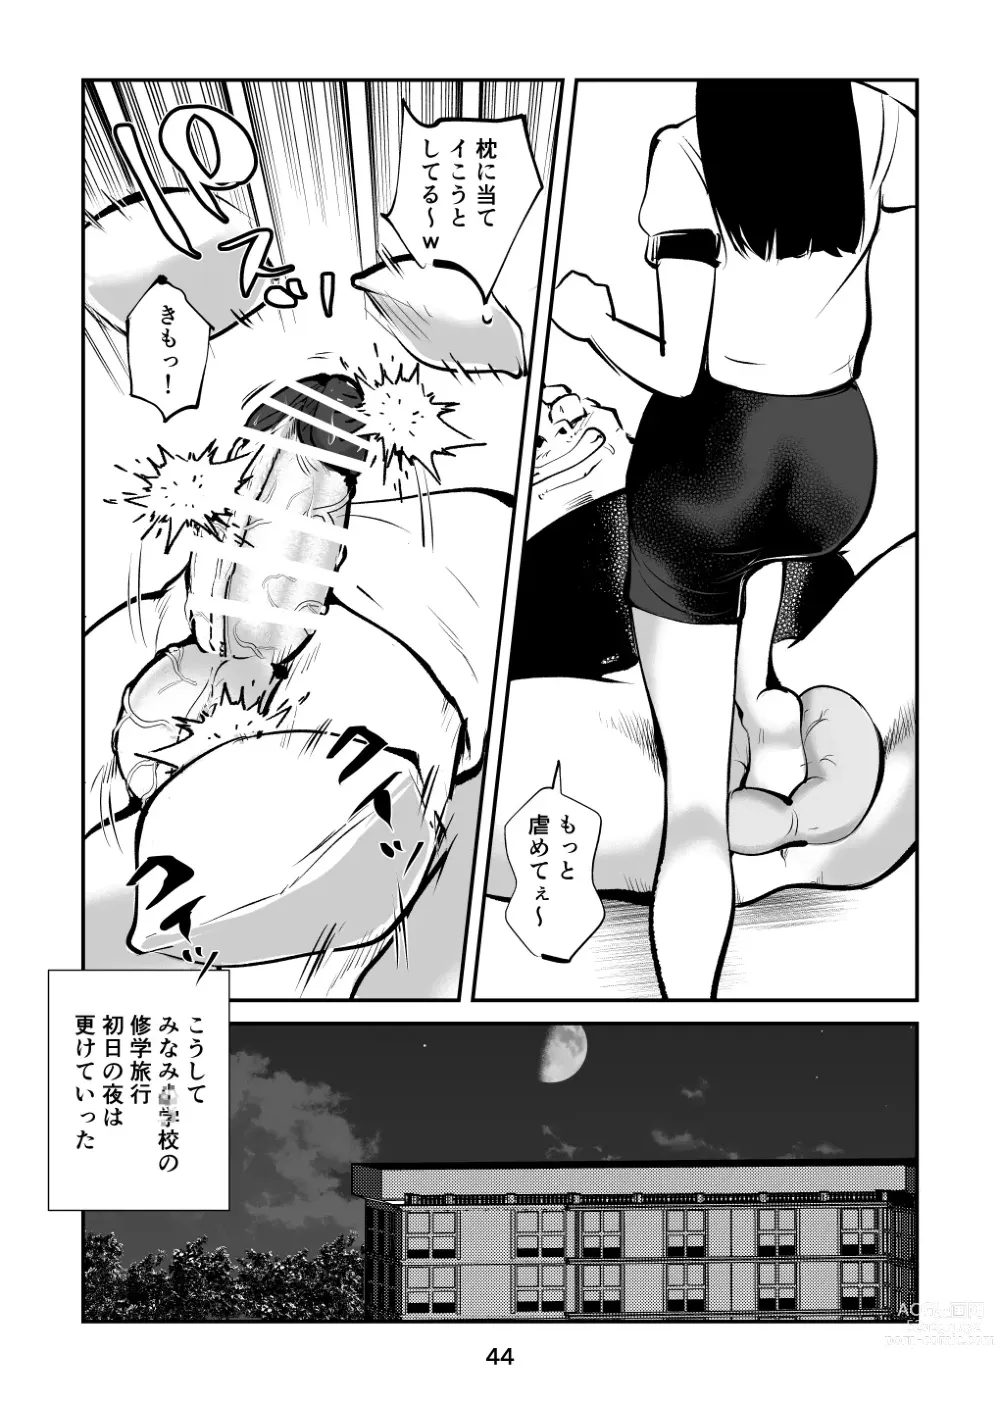 Page 44 of doujinshi Chinpo Shiikukakari 4